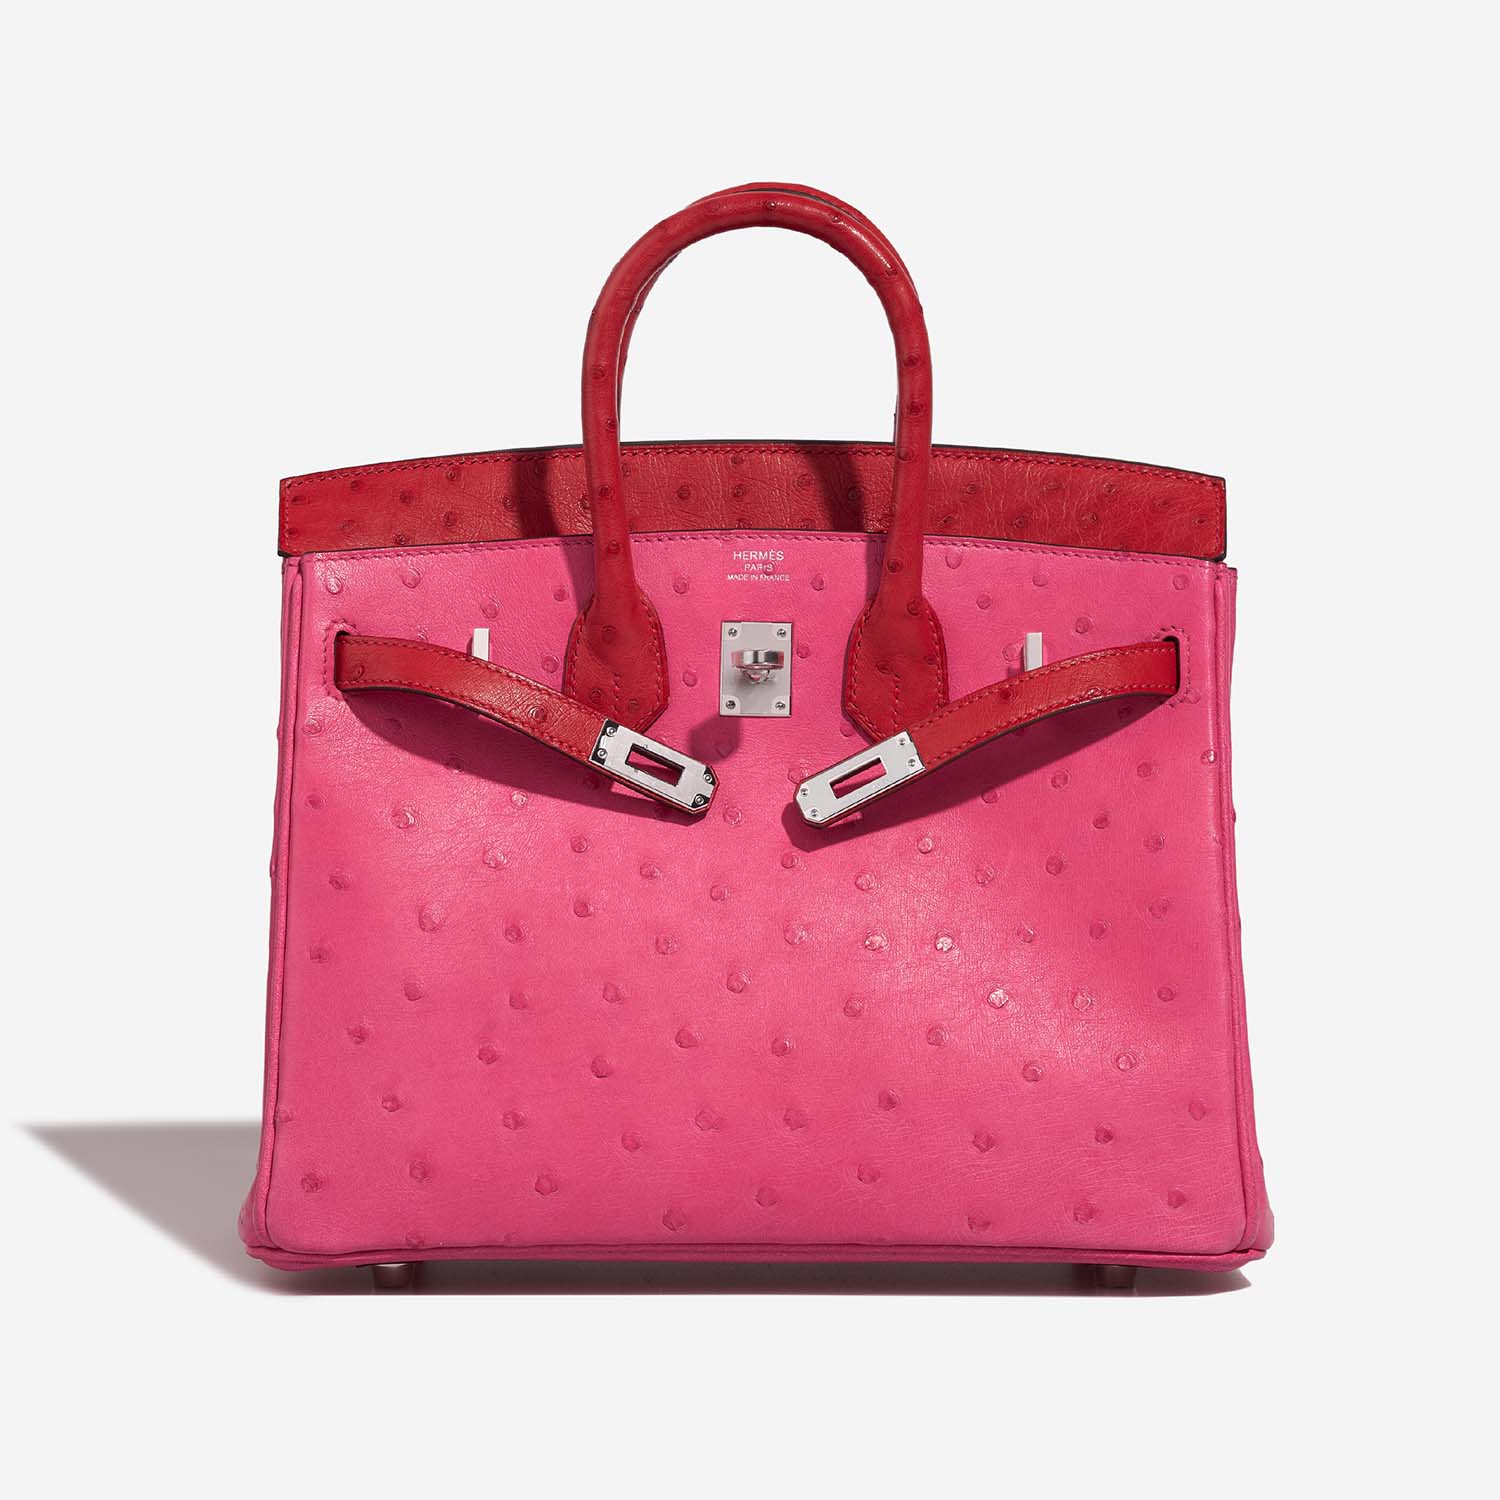 Hermès Birkin 25 RoseTyrien-RougeVif 3FO S | Verkaufen Sie Ihre Designertasche auf Saclab.com